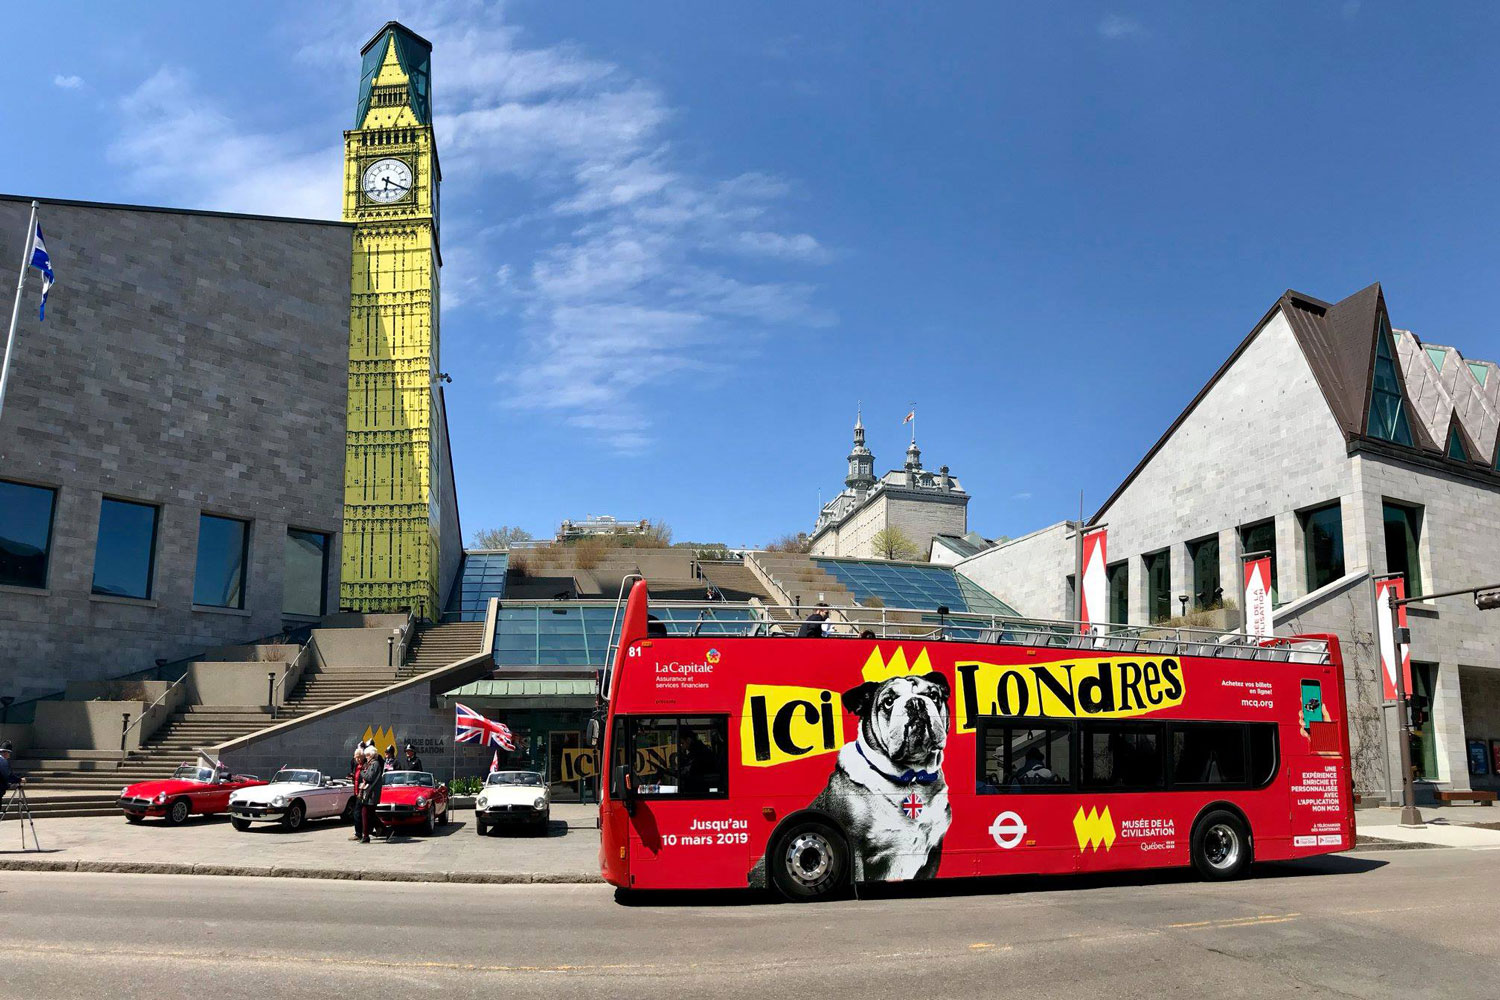 Les Tours du Vieux-Québec ont apporté leur contribution lors de l'inauguration en mettant à disposition du Musée l'autobus rouge faisant la promotion de l'exposition Ici Londres.
Photo : Marie-Claude Mailhiot